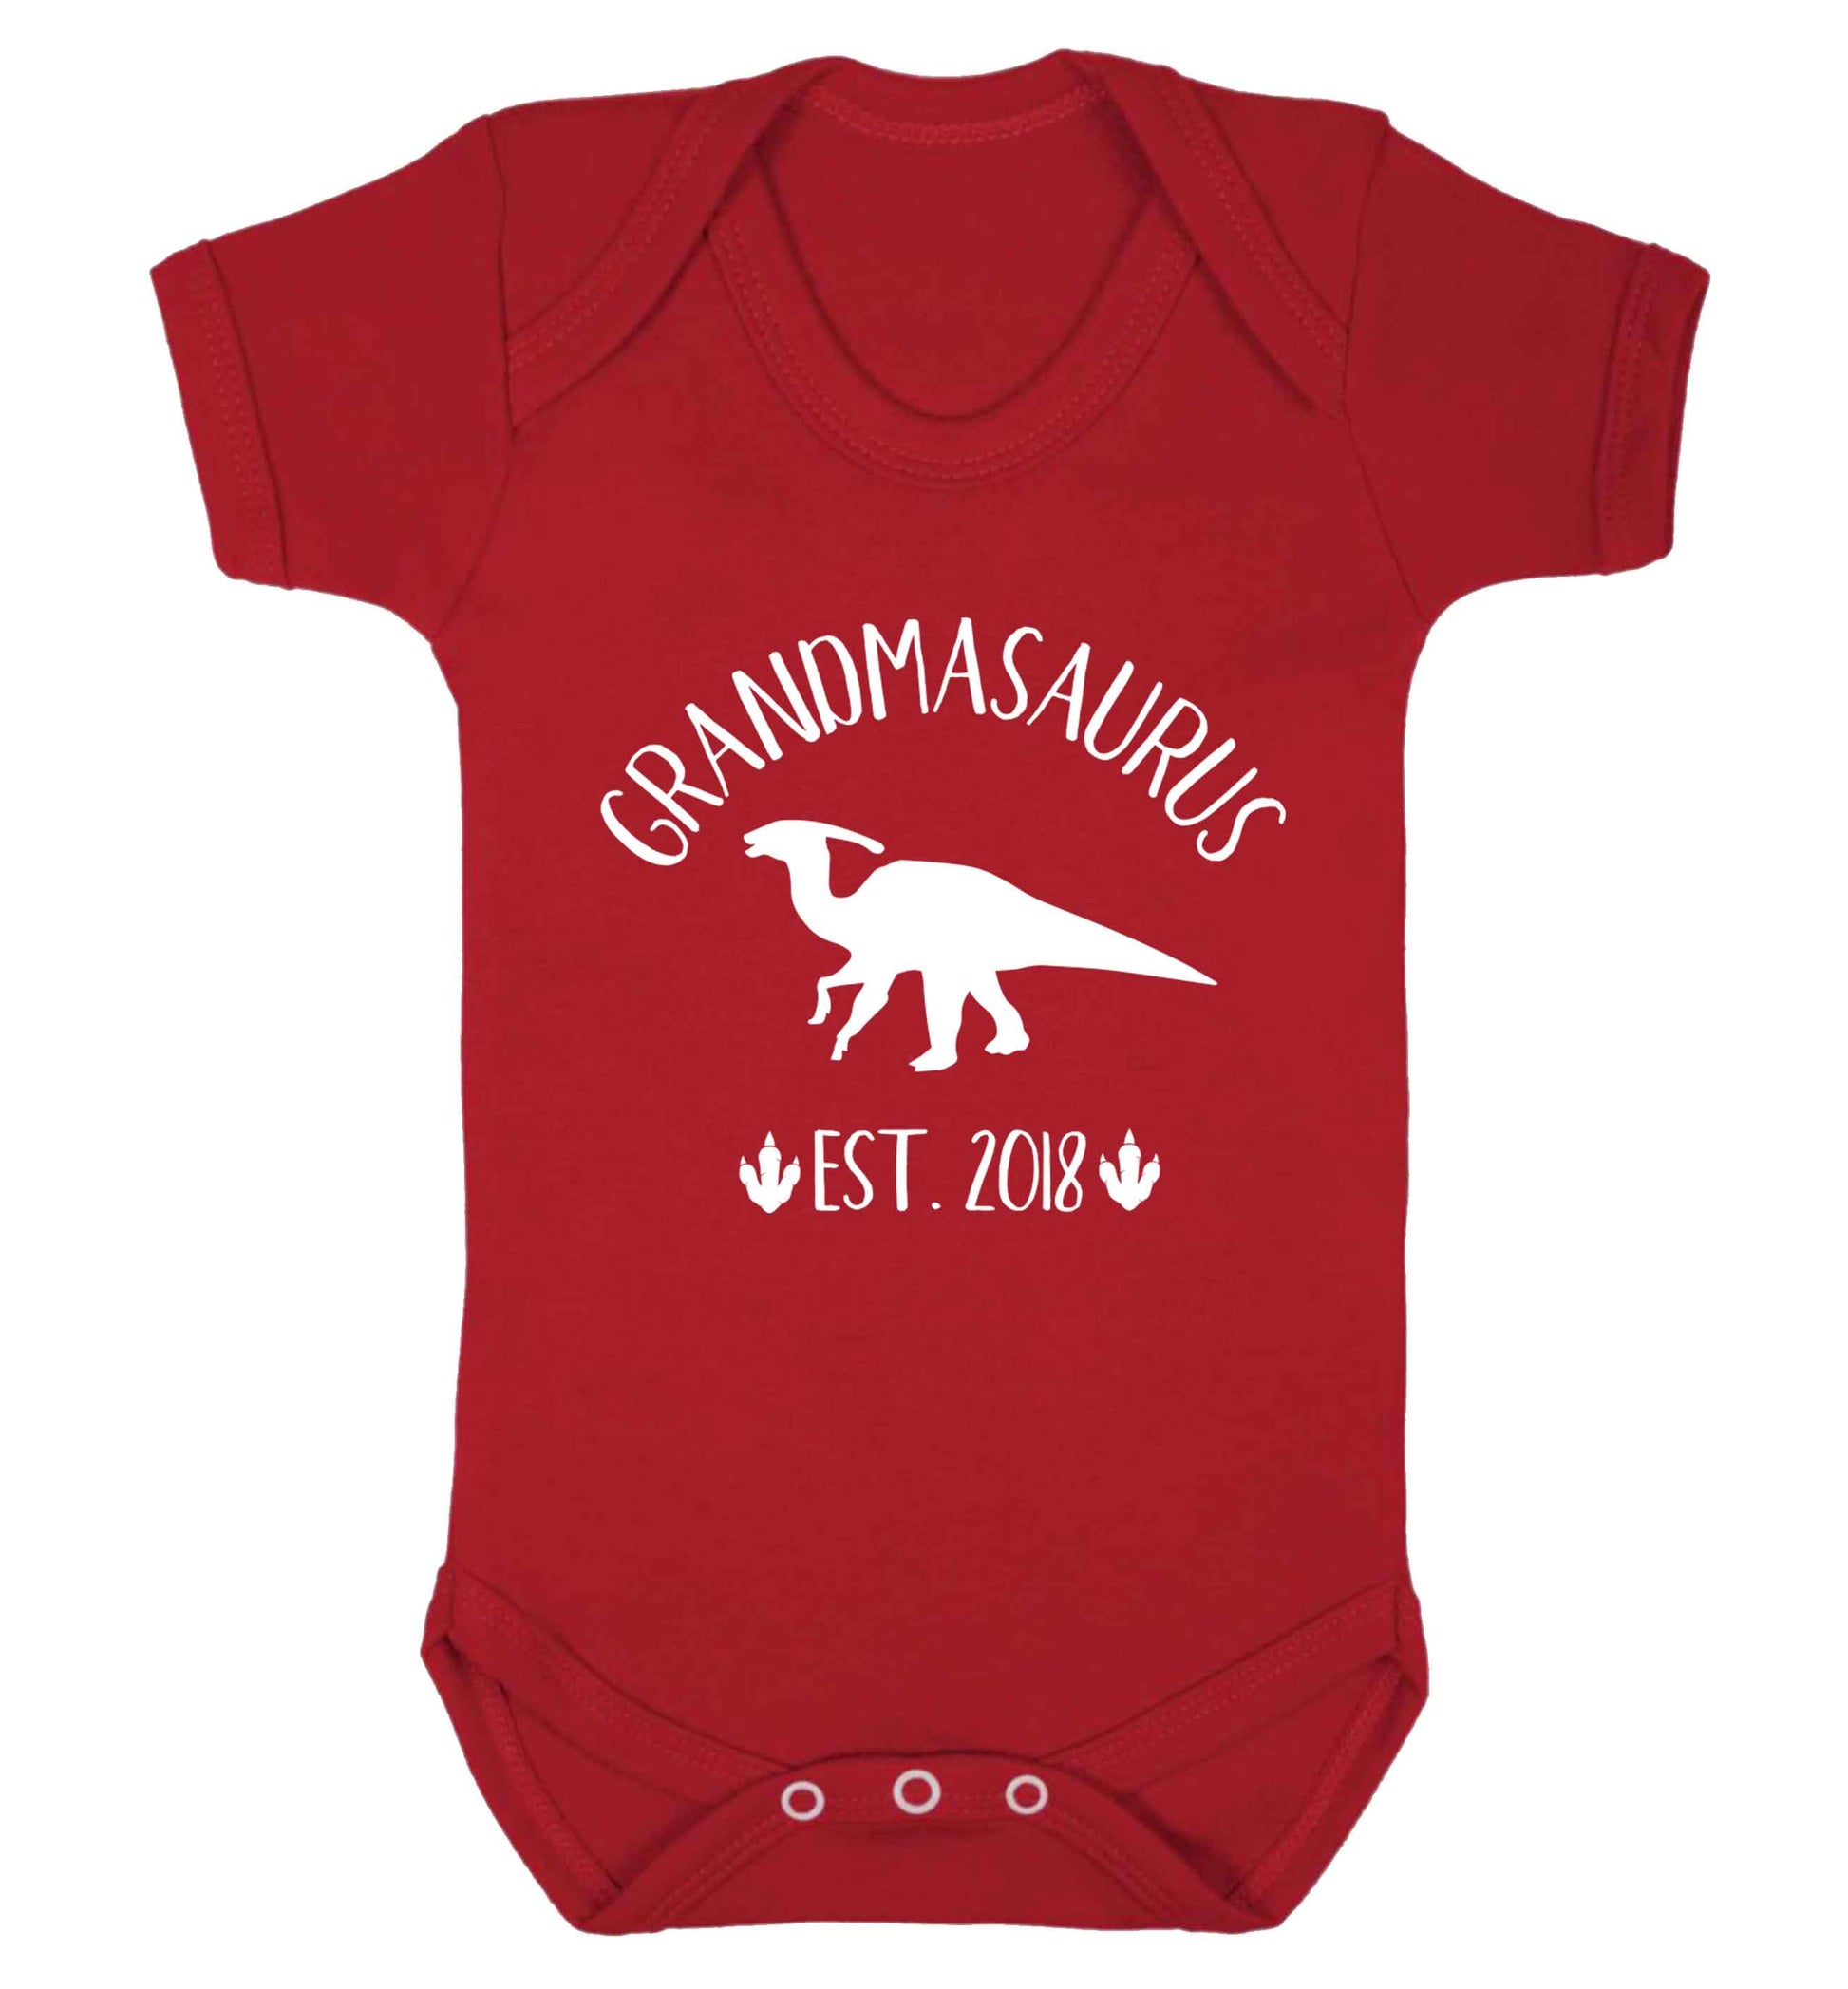 Personalised grandmasaurus since (custom date) Baby Vest red 18-24 months